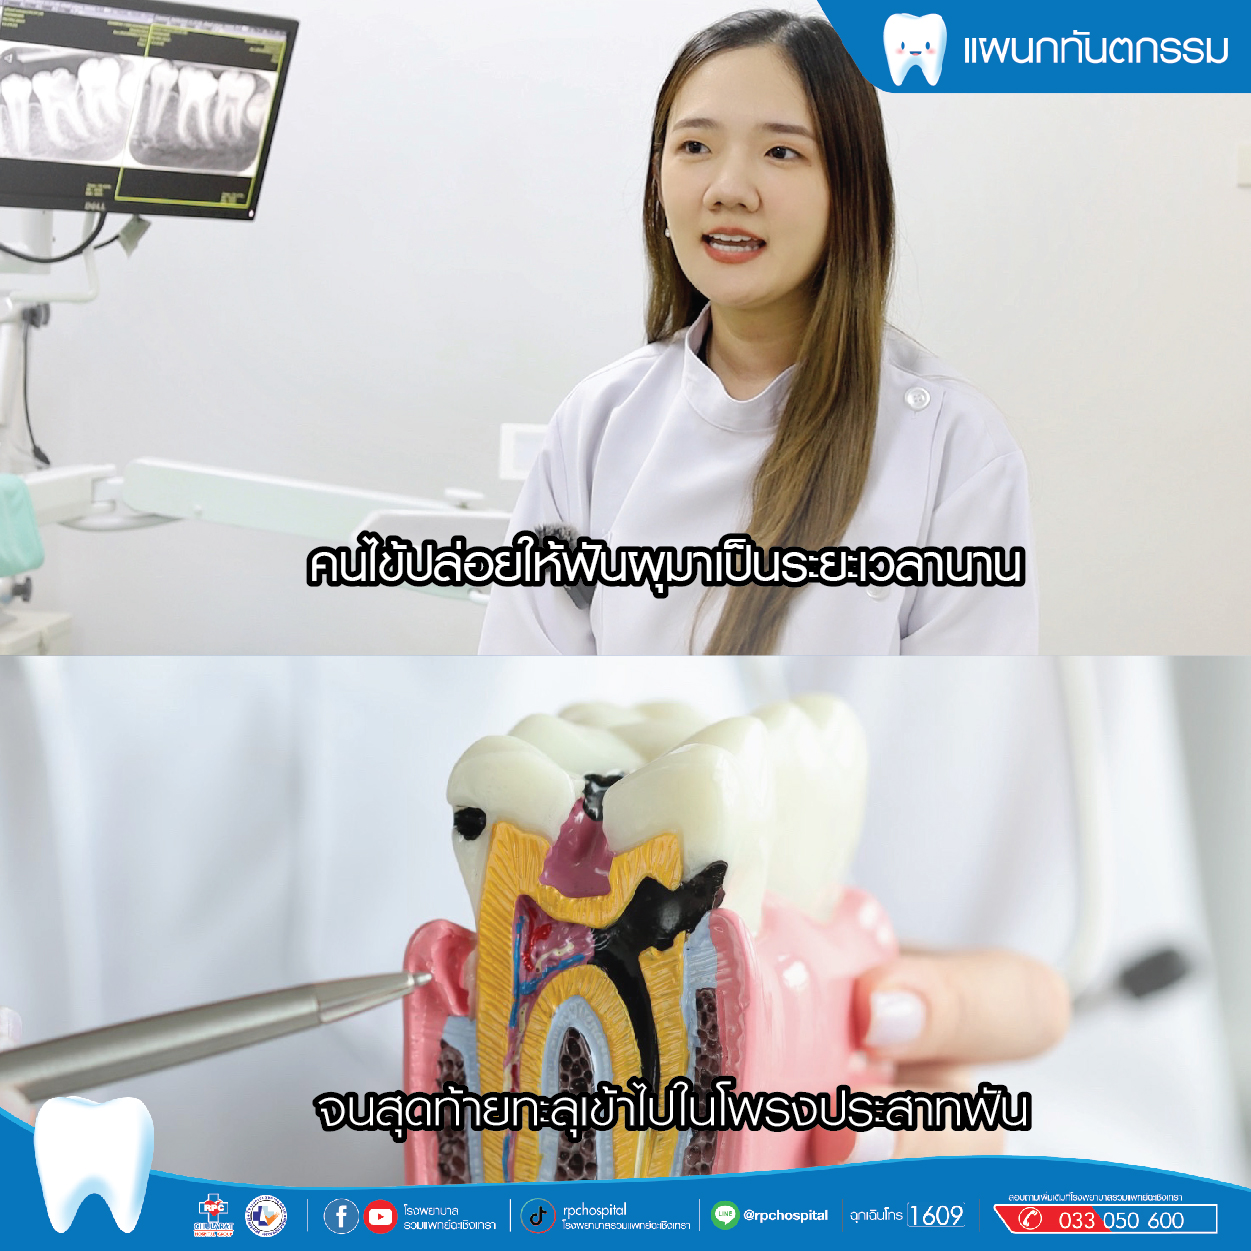 ฟันผุทะลุโพรงประสาทคืออะไร รักษาได้ไหม - ความรู้สุขภาพ - โรงพยาบาลรวมแพทย์ฉะเชิงเทรา